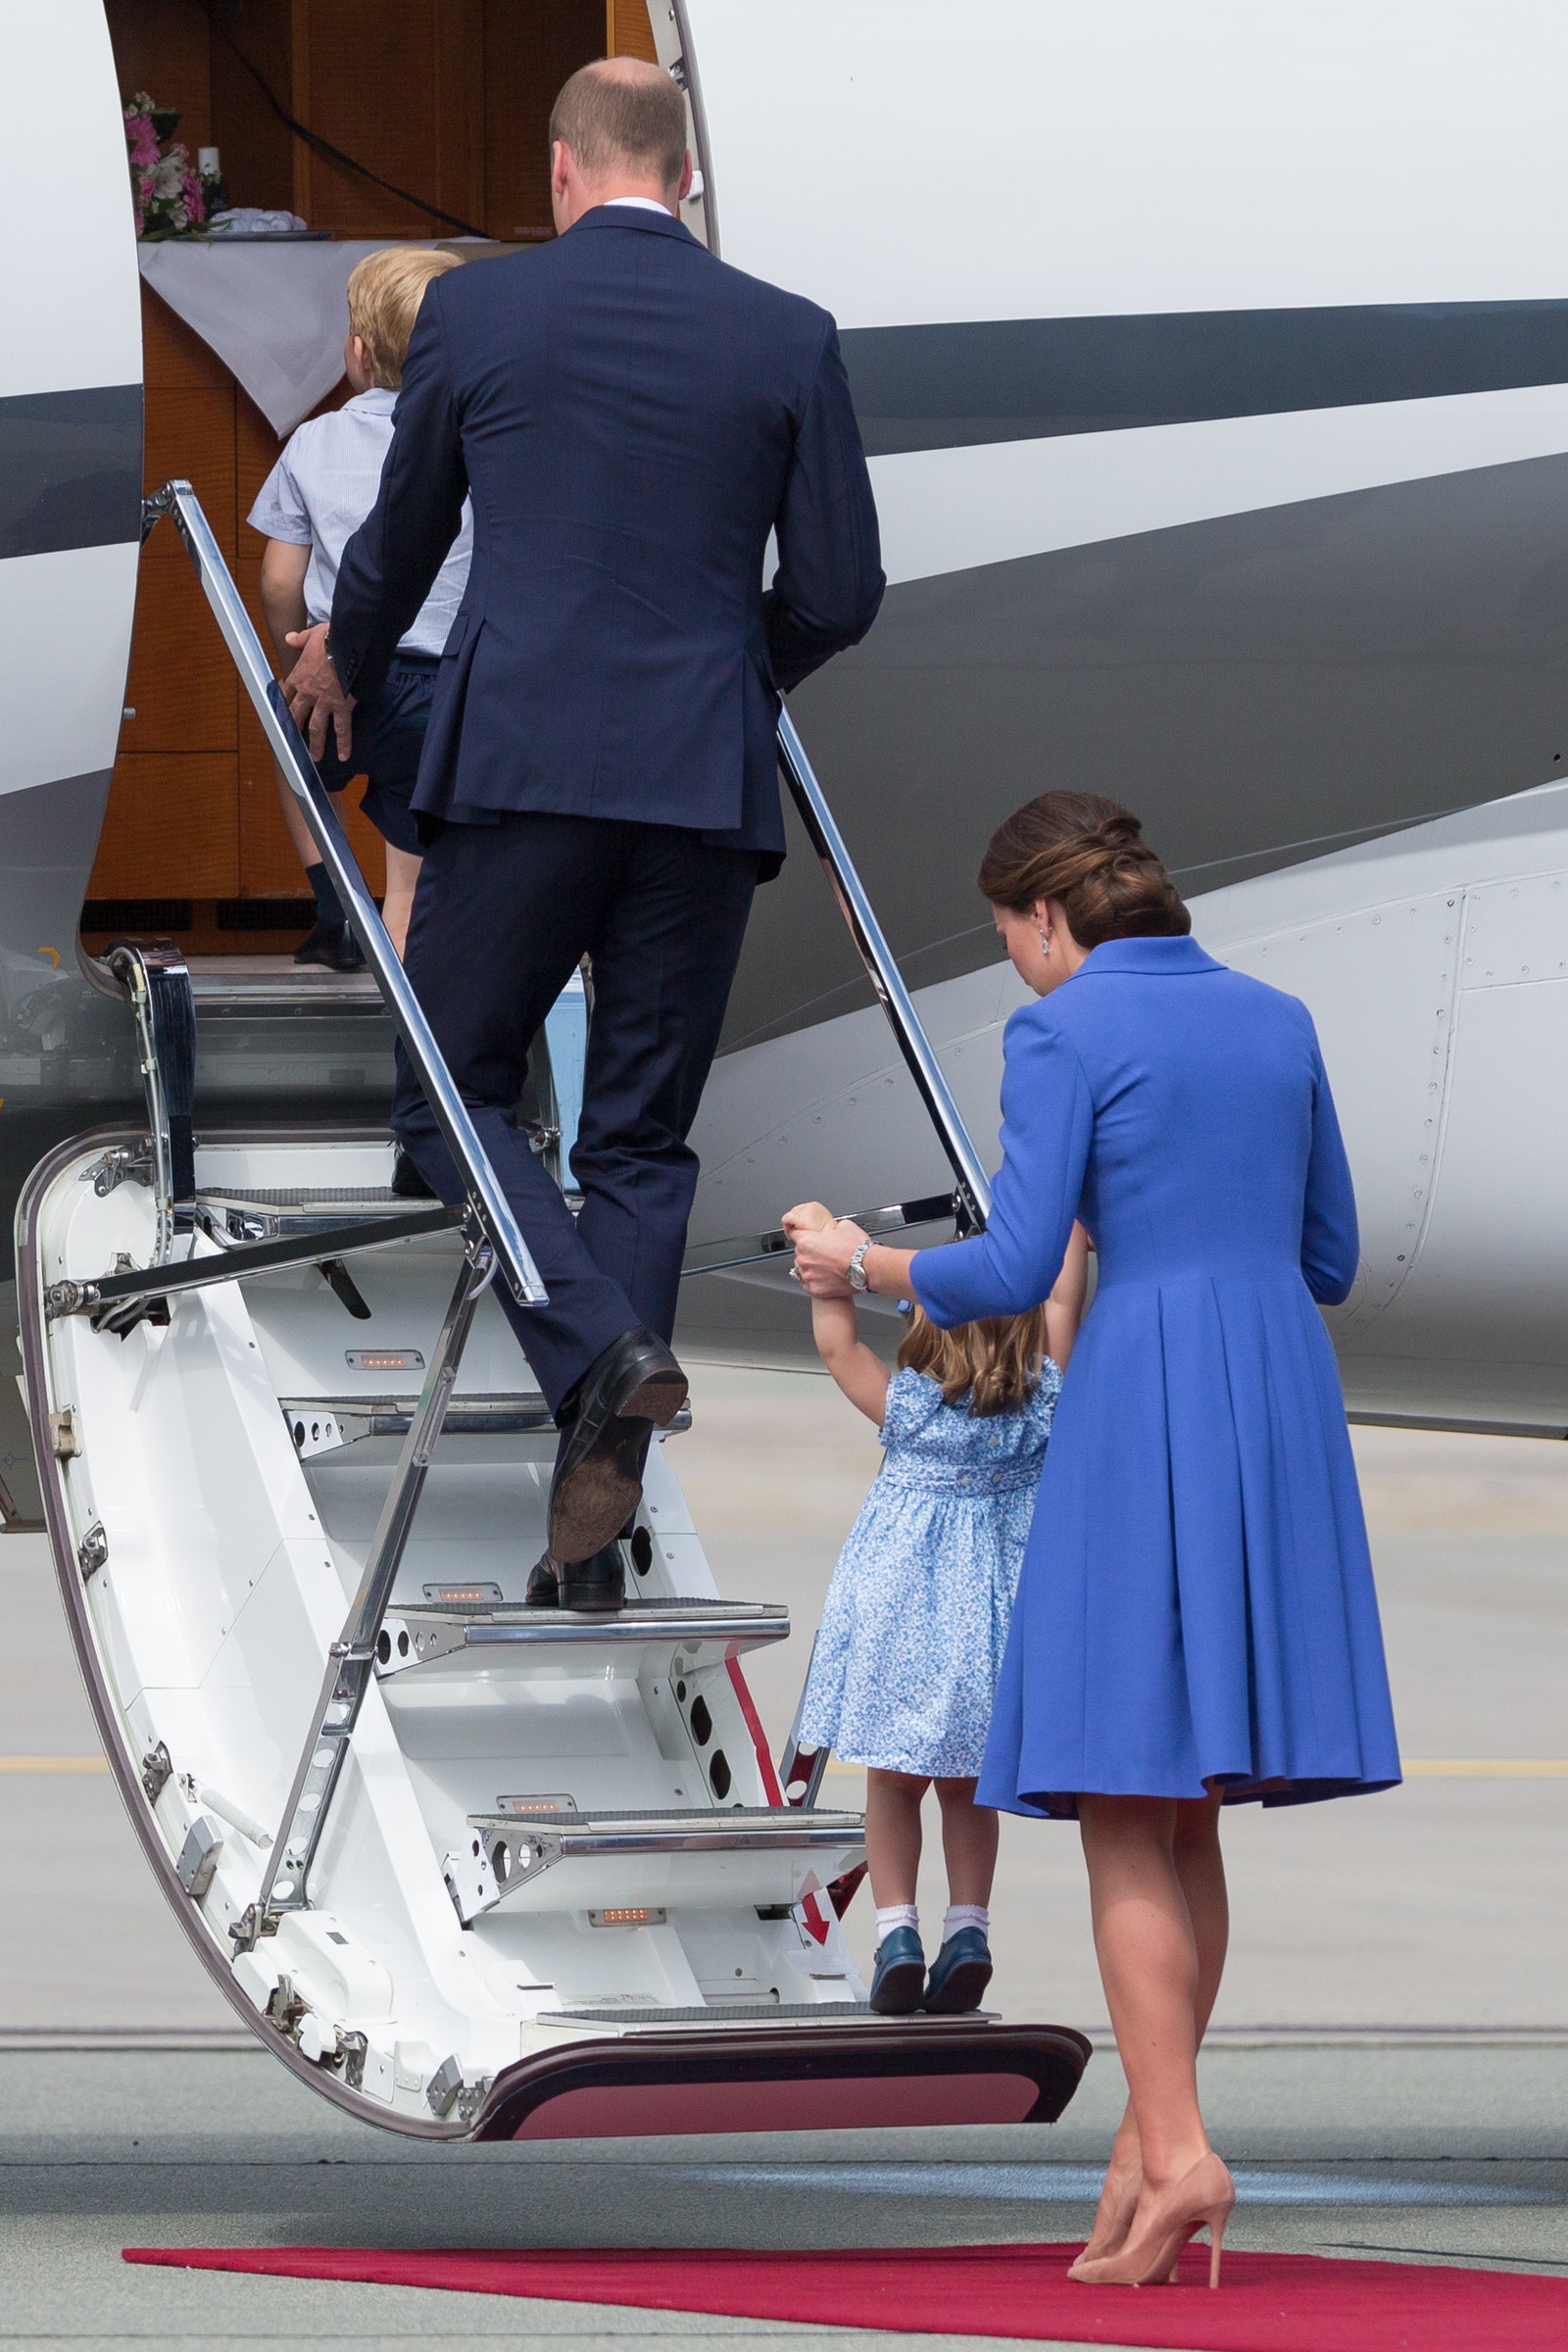 «Они казались обычной путешествующей семьей» принц Уильям и Кейт Миддлтон с детьми летают экономклассом